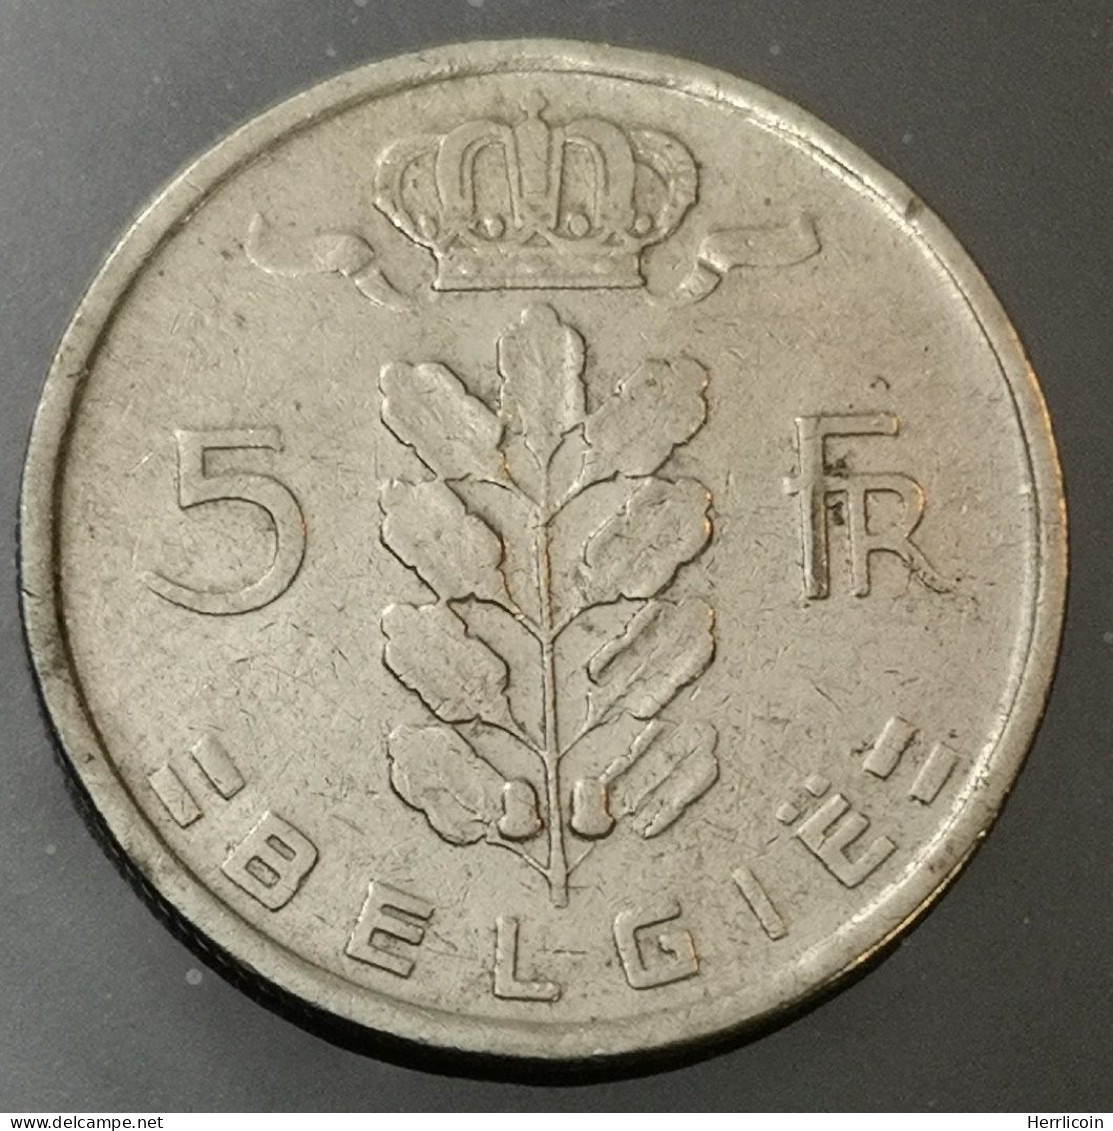 Monnaie Belgique - 1950 - 5 Francs Cérès en Néerlandais - 5 Frank